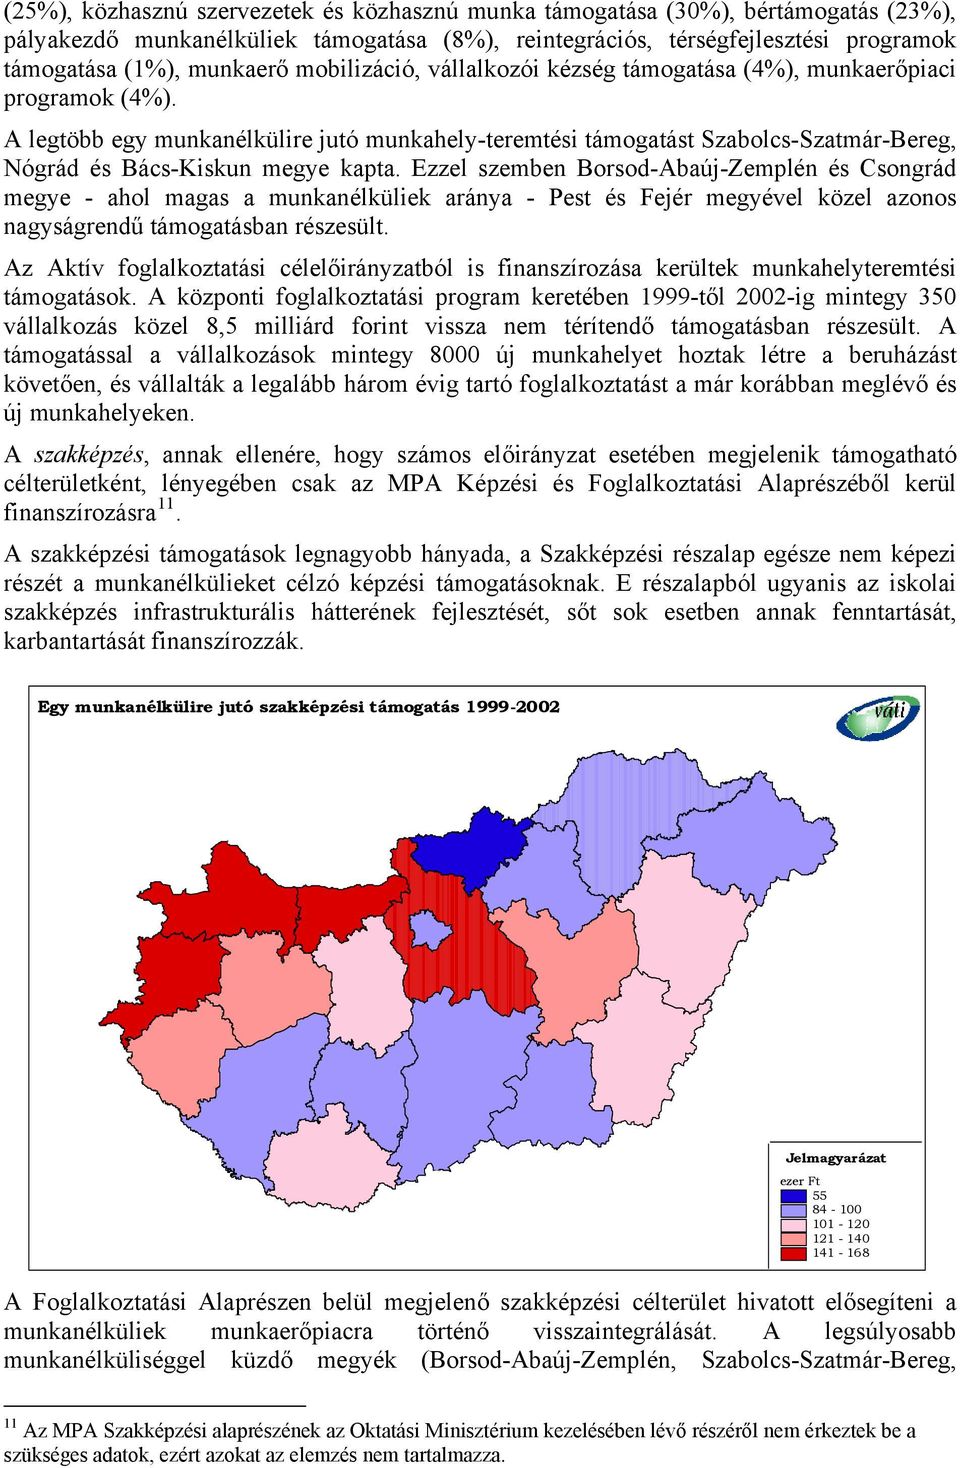 A legtöbb egy munkanélkülire jutó munkahely-teremtési támogatást Szabolcs-Szatmár-Bereg, Nógrád és Bács-Kiskun megye kapta.